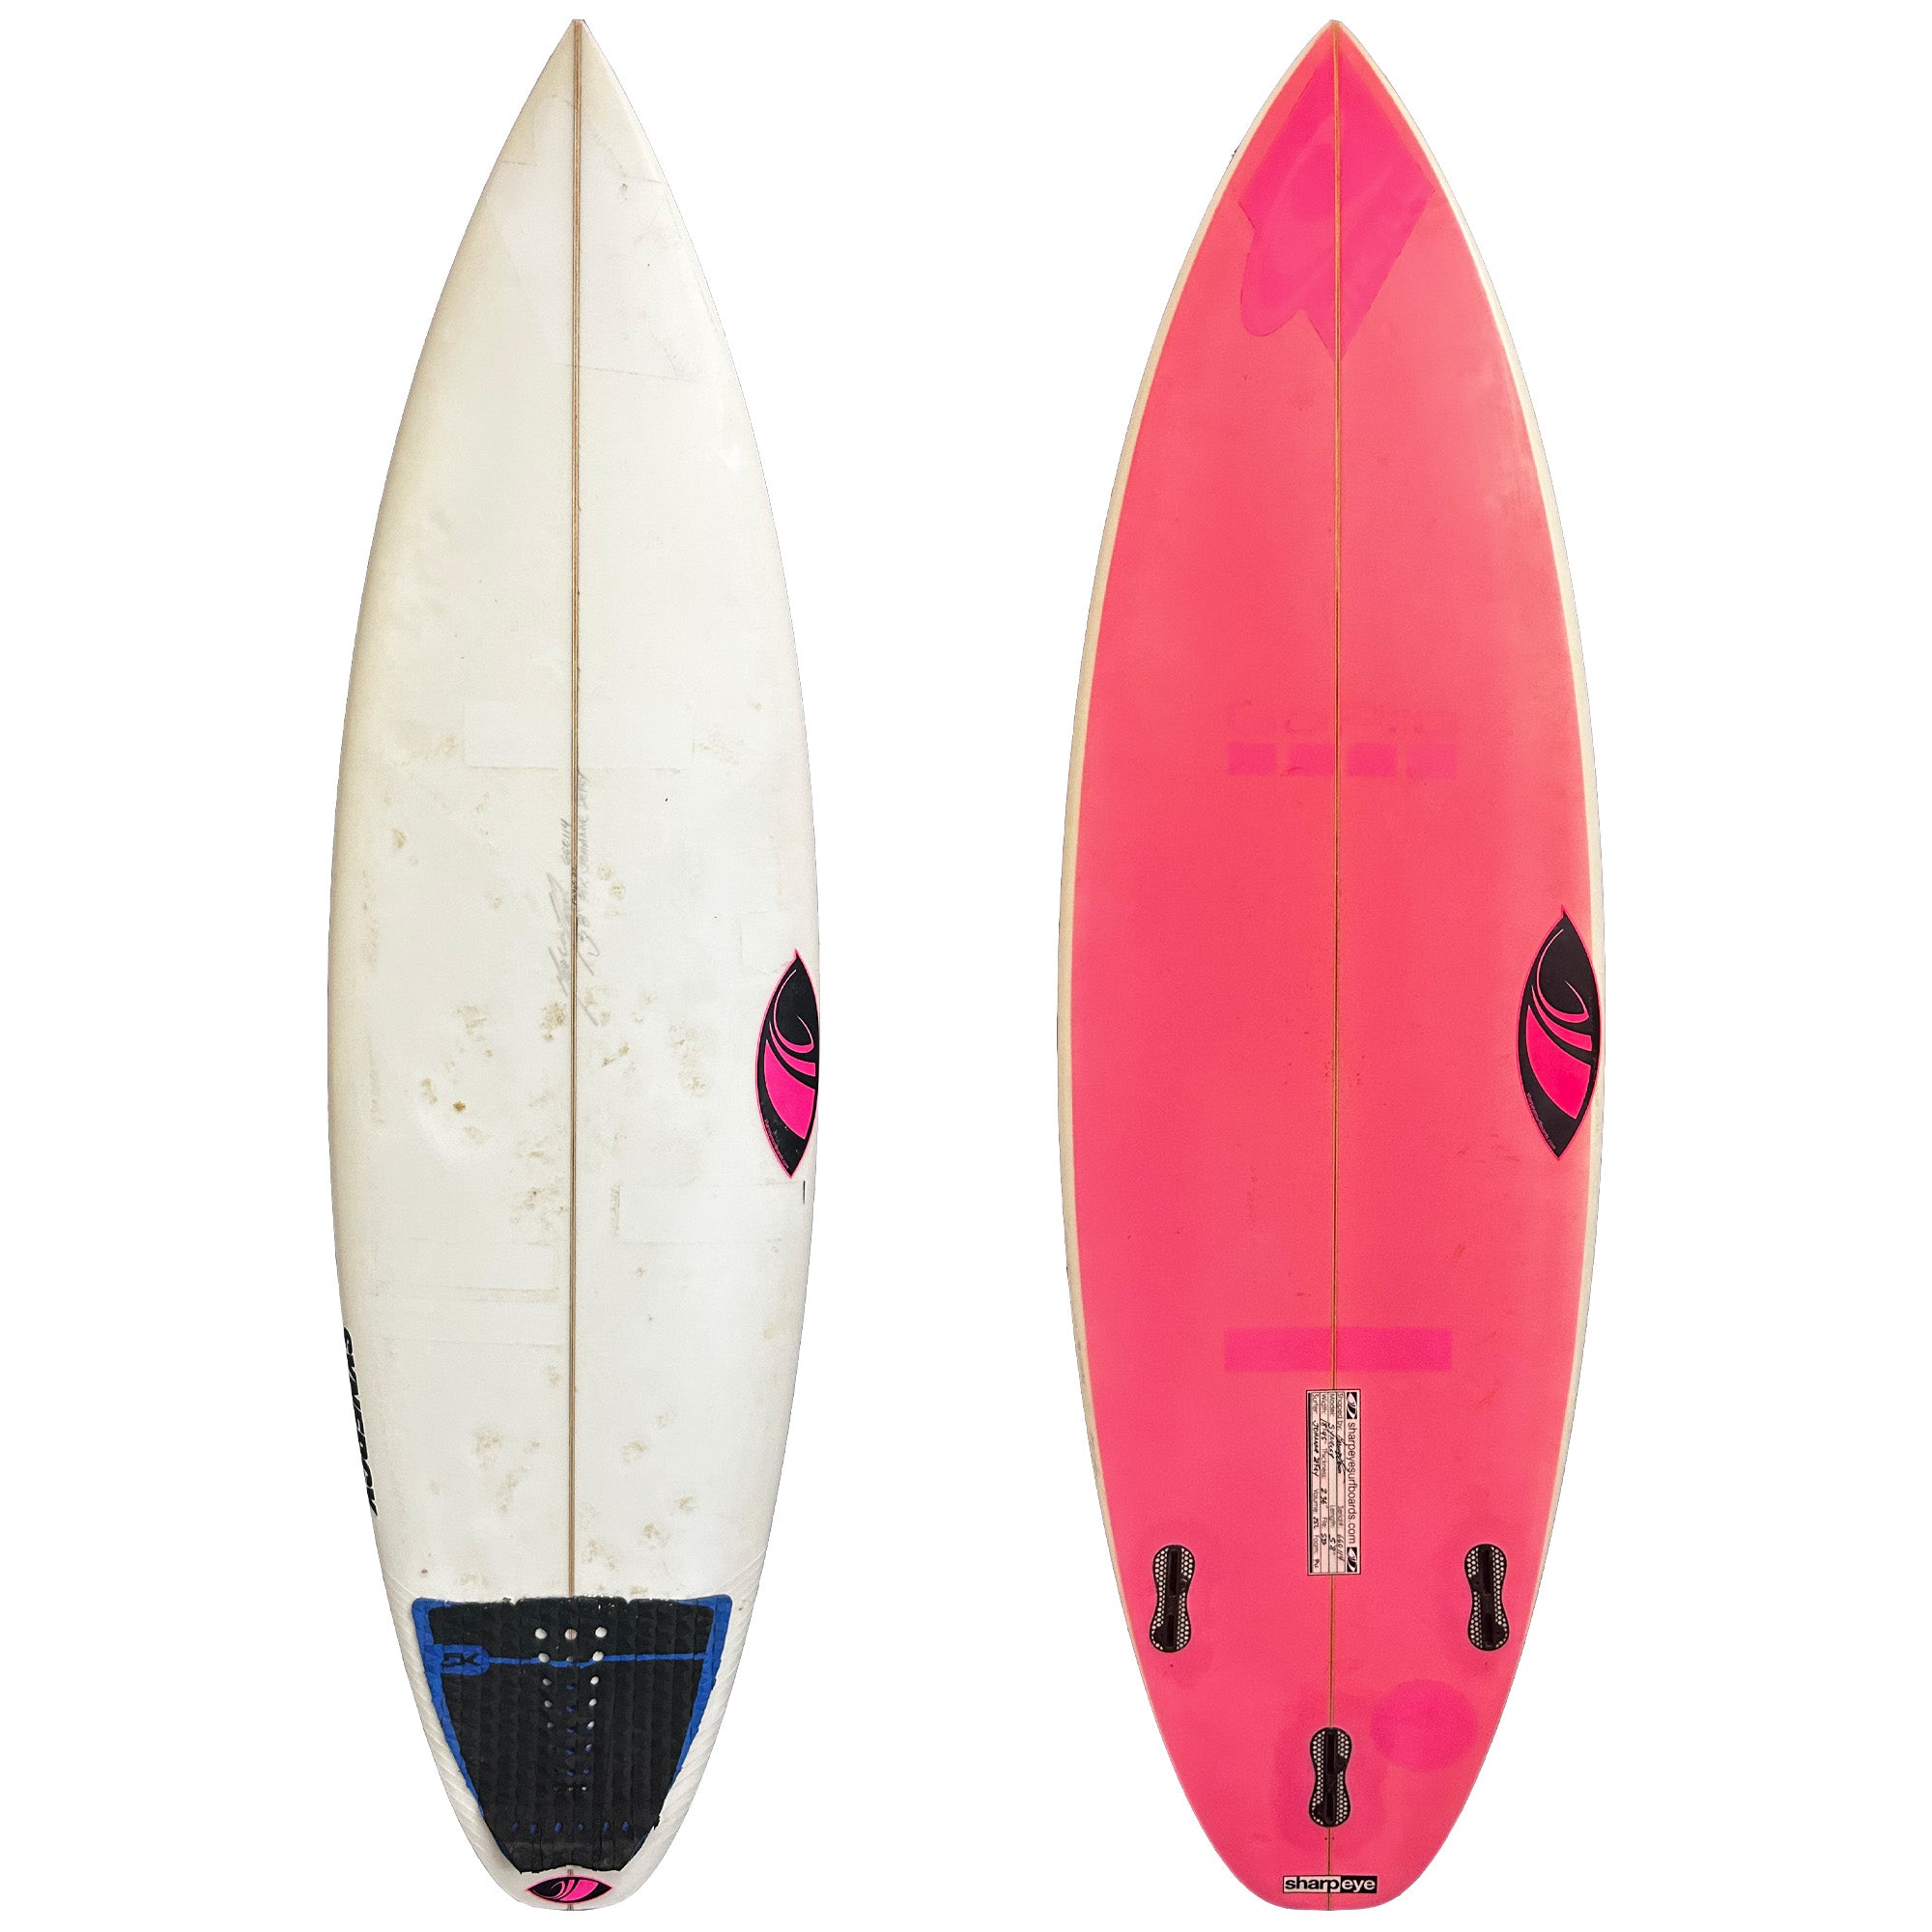 Sharp Eye Synergy 5'8 Consignment Surfboard